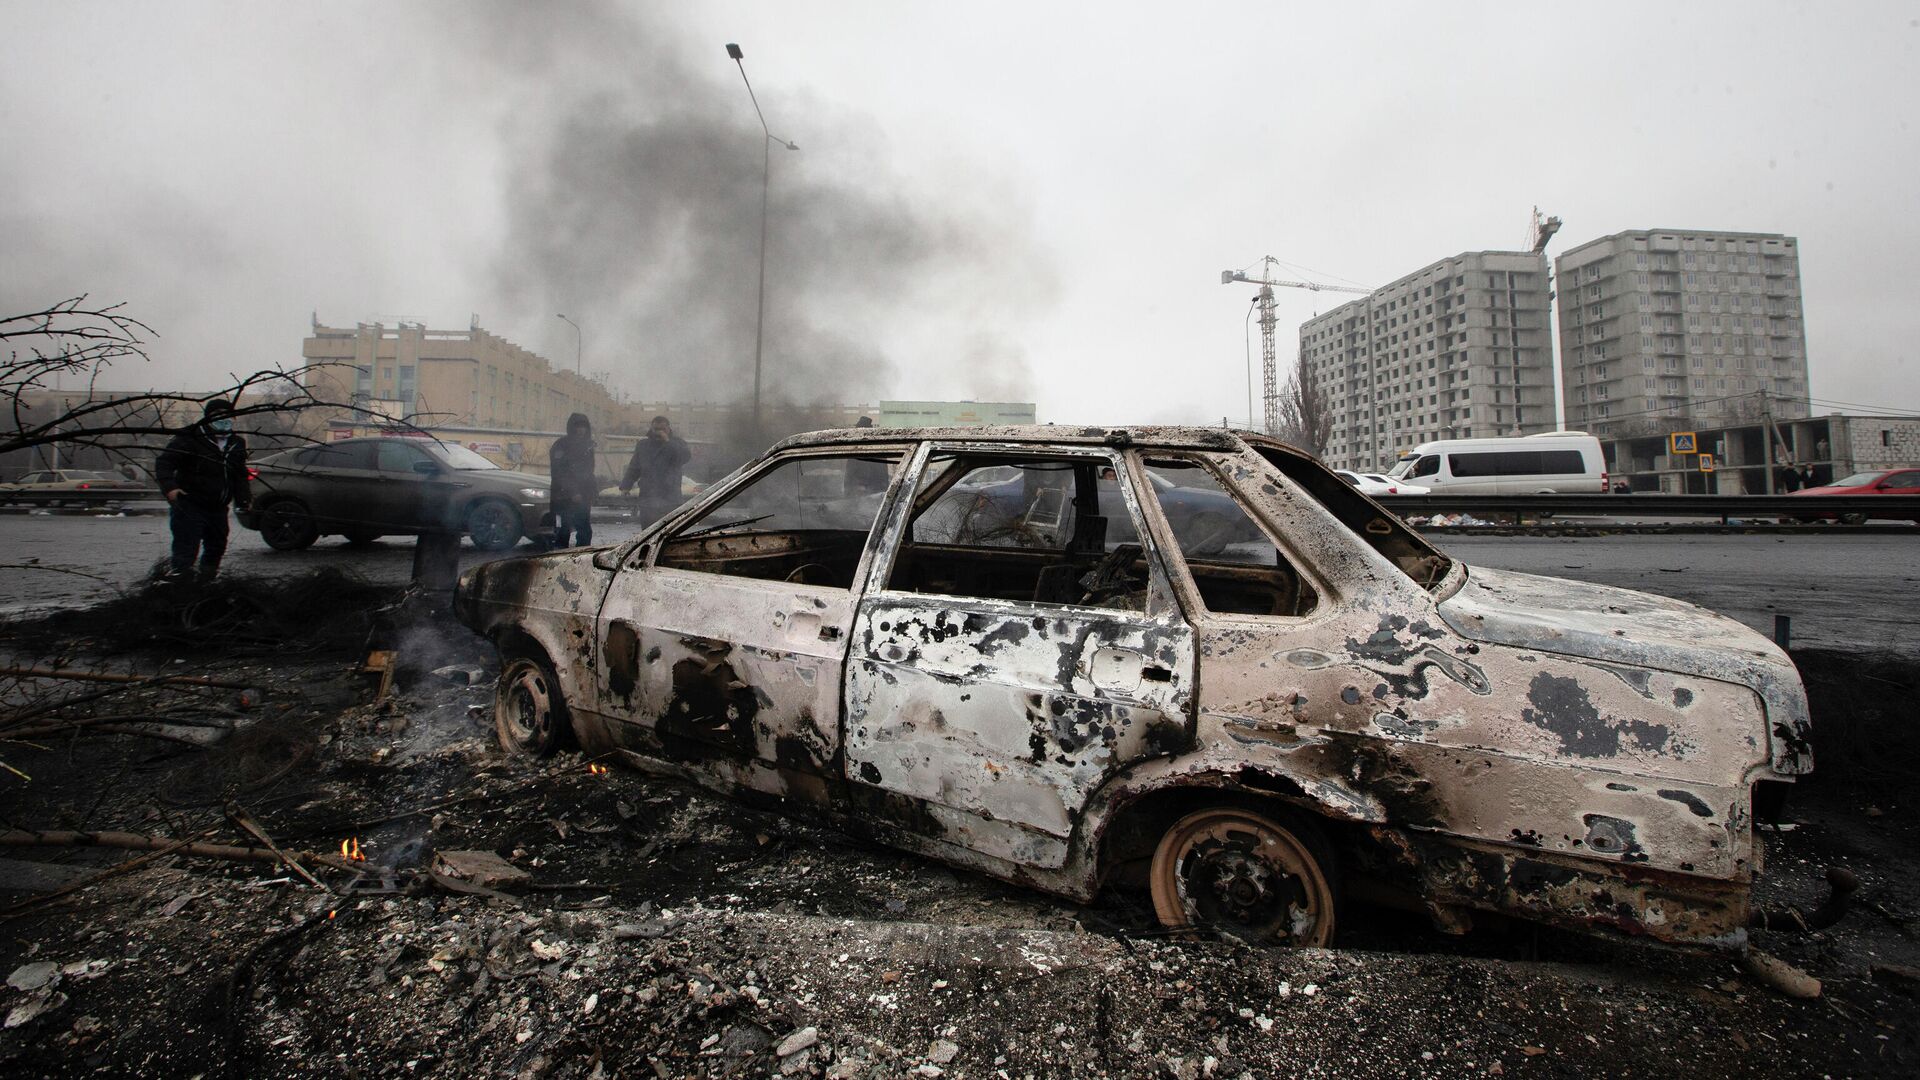 Сгоревший во время протестов автомобиль на улице в Алматы, Казахстан, 9 января 2022 года - Sputnik Азербайджан, 1920, 05.01.2023